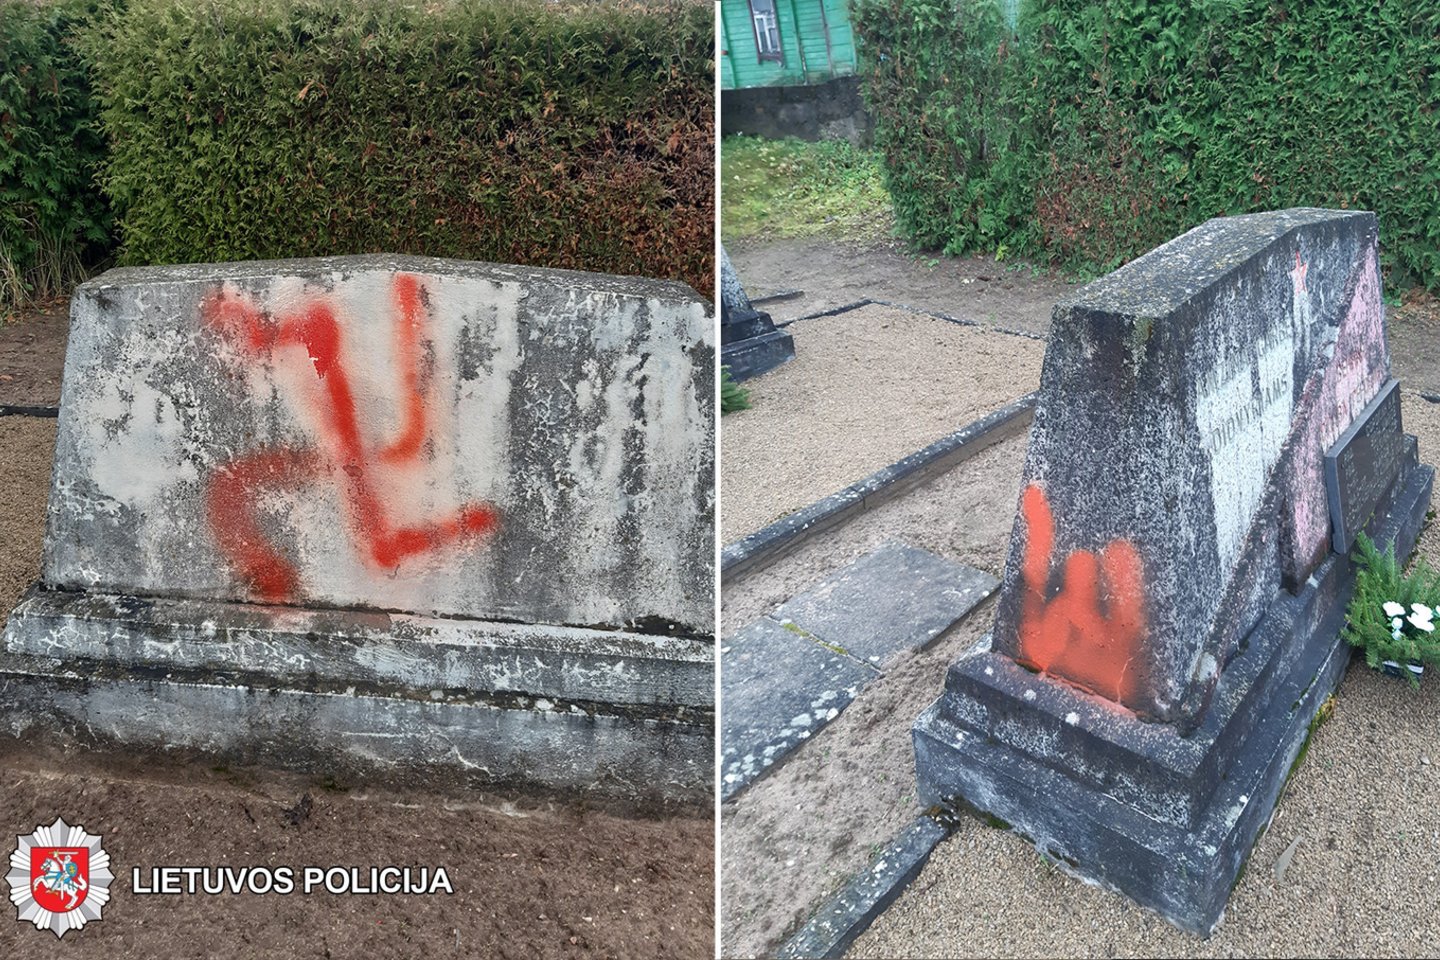  Rokiškio policija kol kas negali surasti, kas raudonais dažais apipurškė sovietų karių paminklus.<br> Panevėžio apskrities VPK nuotr.